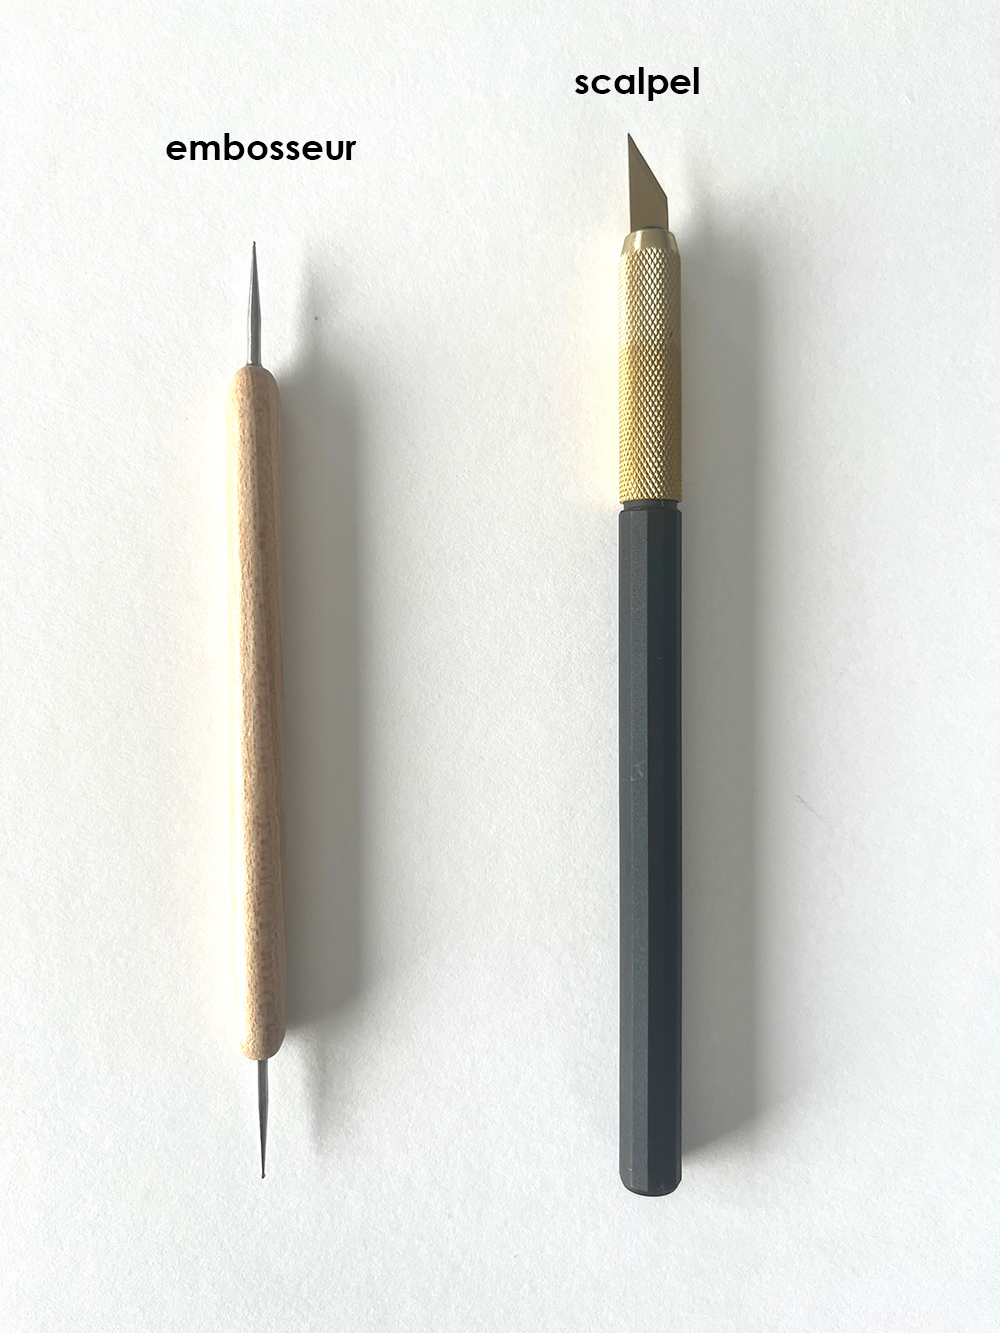  Matériel pour le dessin : crayon.